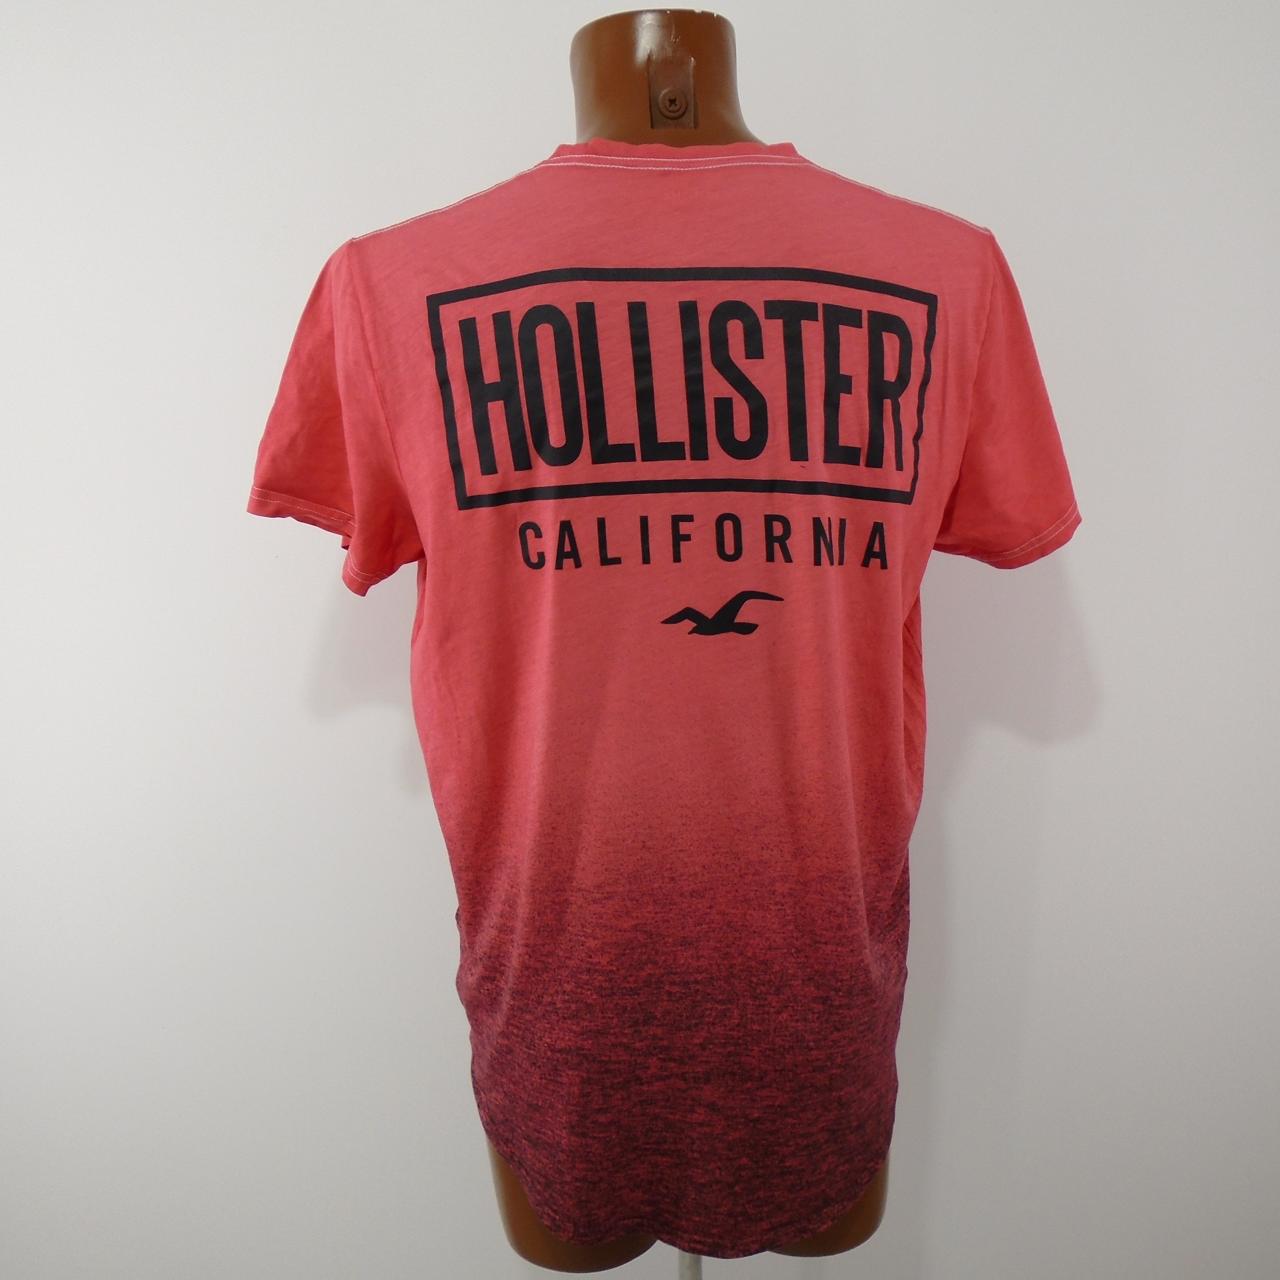 Herren-T-Shirt Hollister.  Rot.  M. gebraucht.  Gut